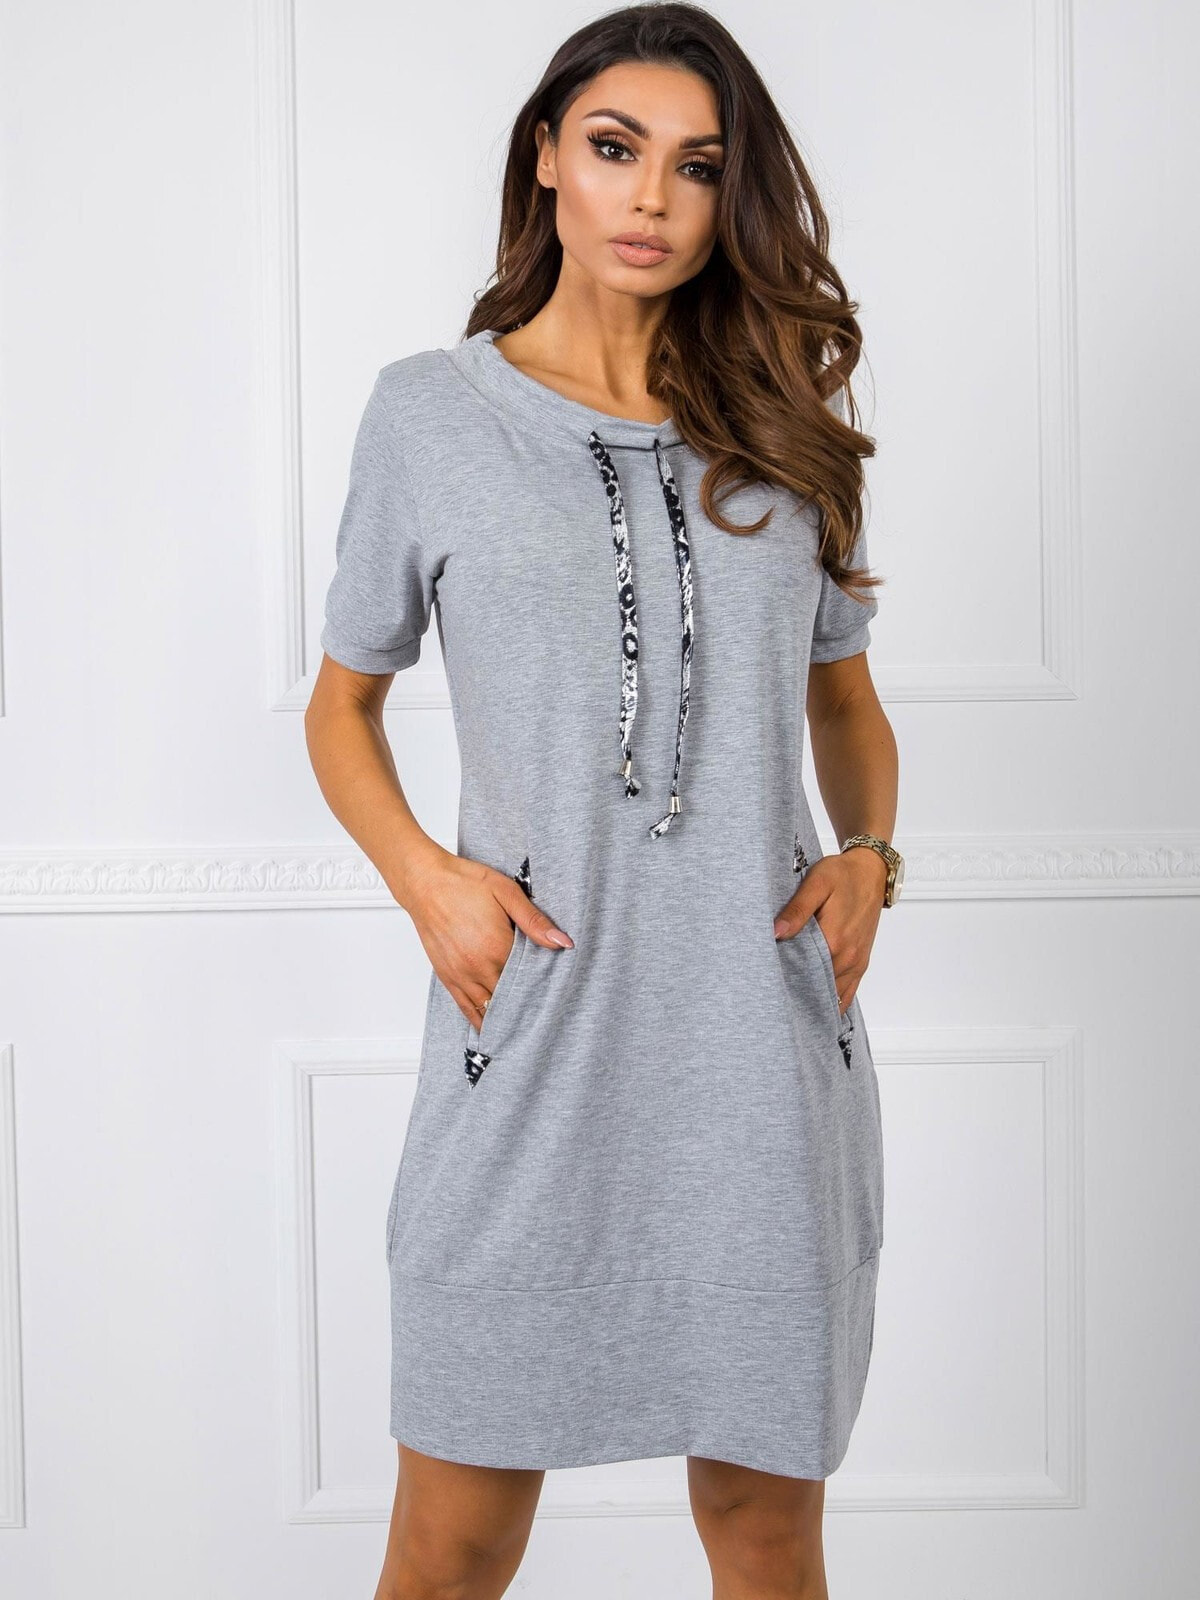 Женское трикотажное платье серое с коротким рукавом и карманами Factory Price